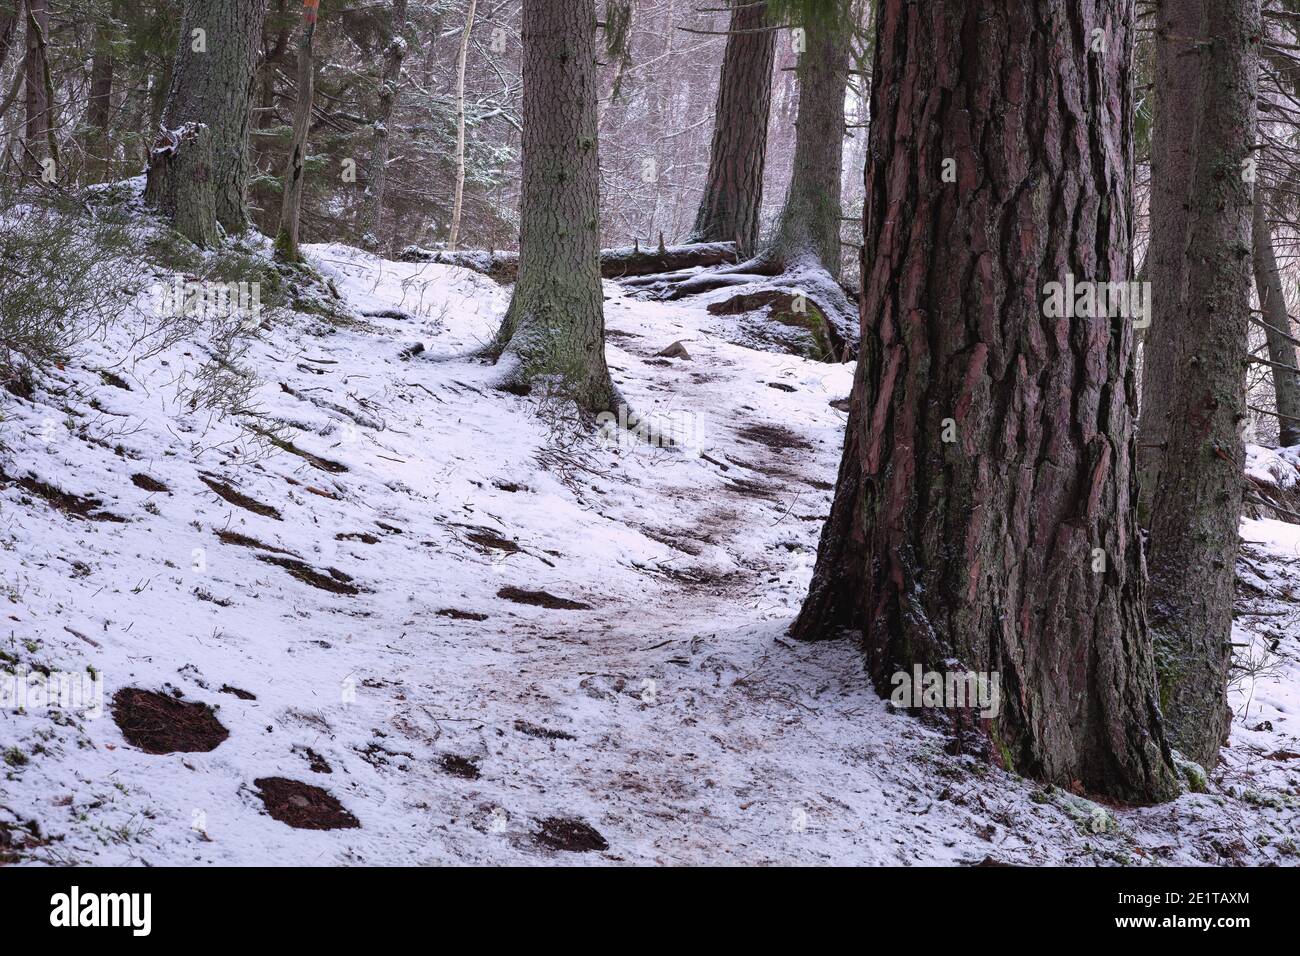 Forest during winter with a bit of snow, near Kvarnberget in Bogesundslandet, Vaxholm, Sweden Stock Photo